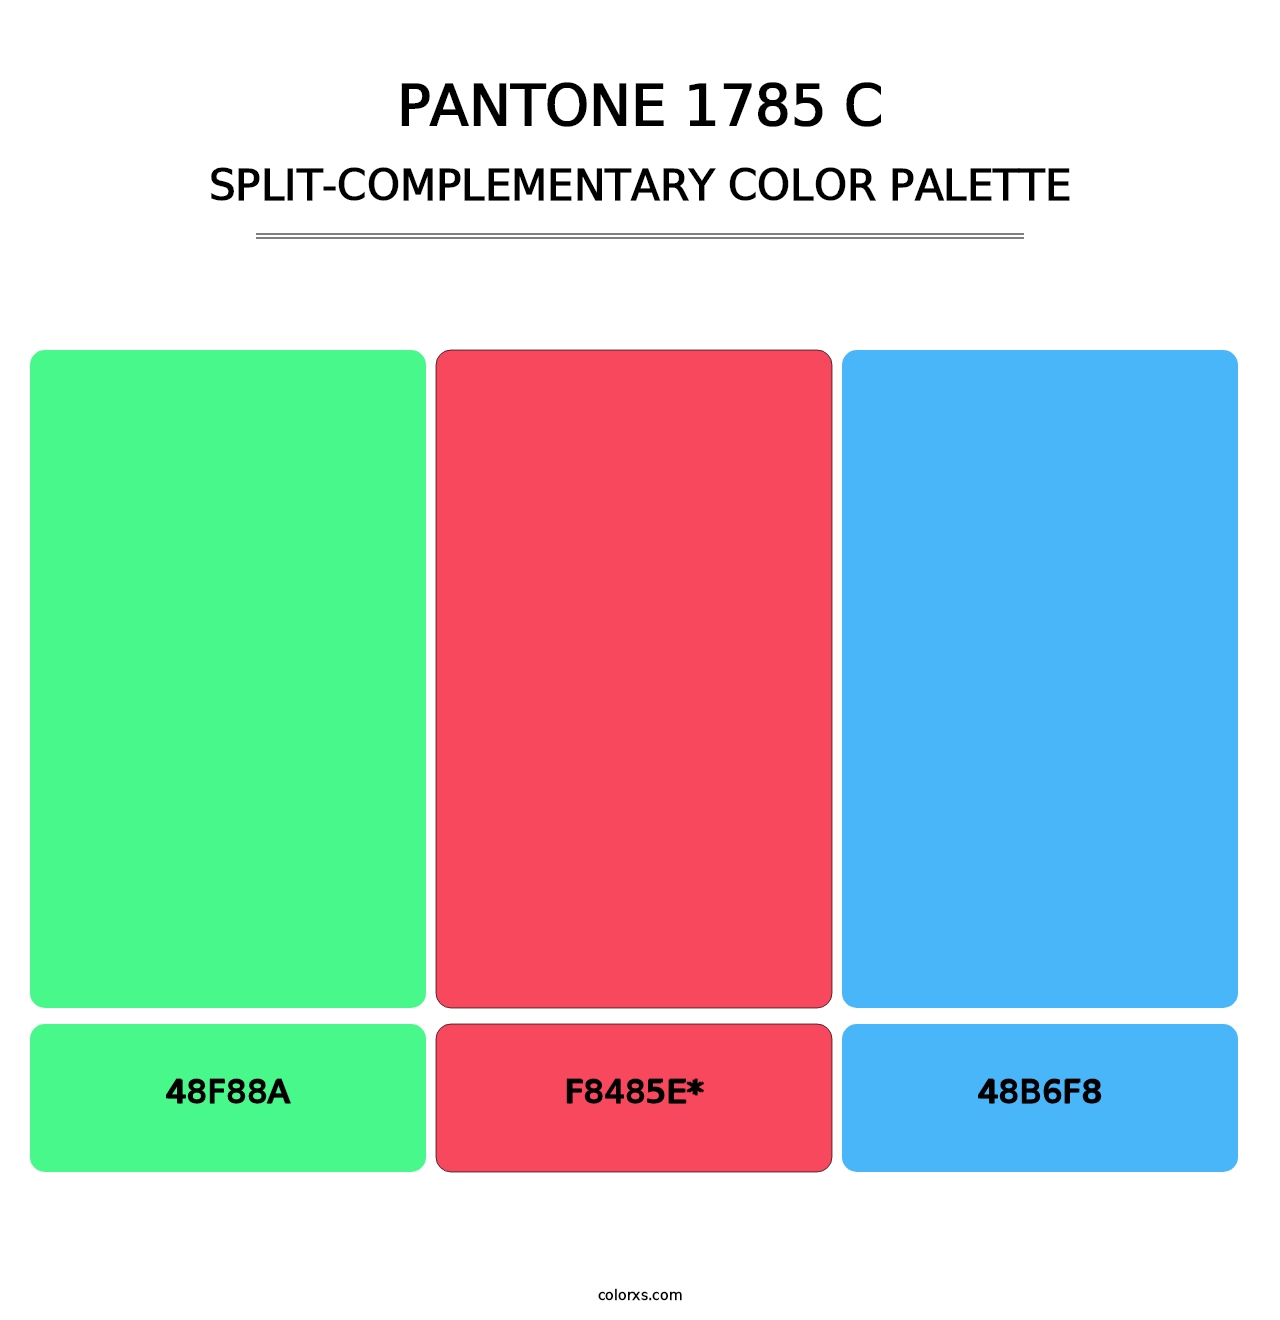 PANTONE 1785 C - Split-Complementary Color Palette